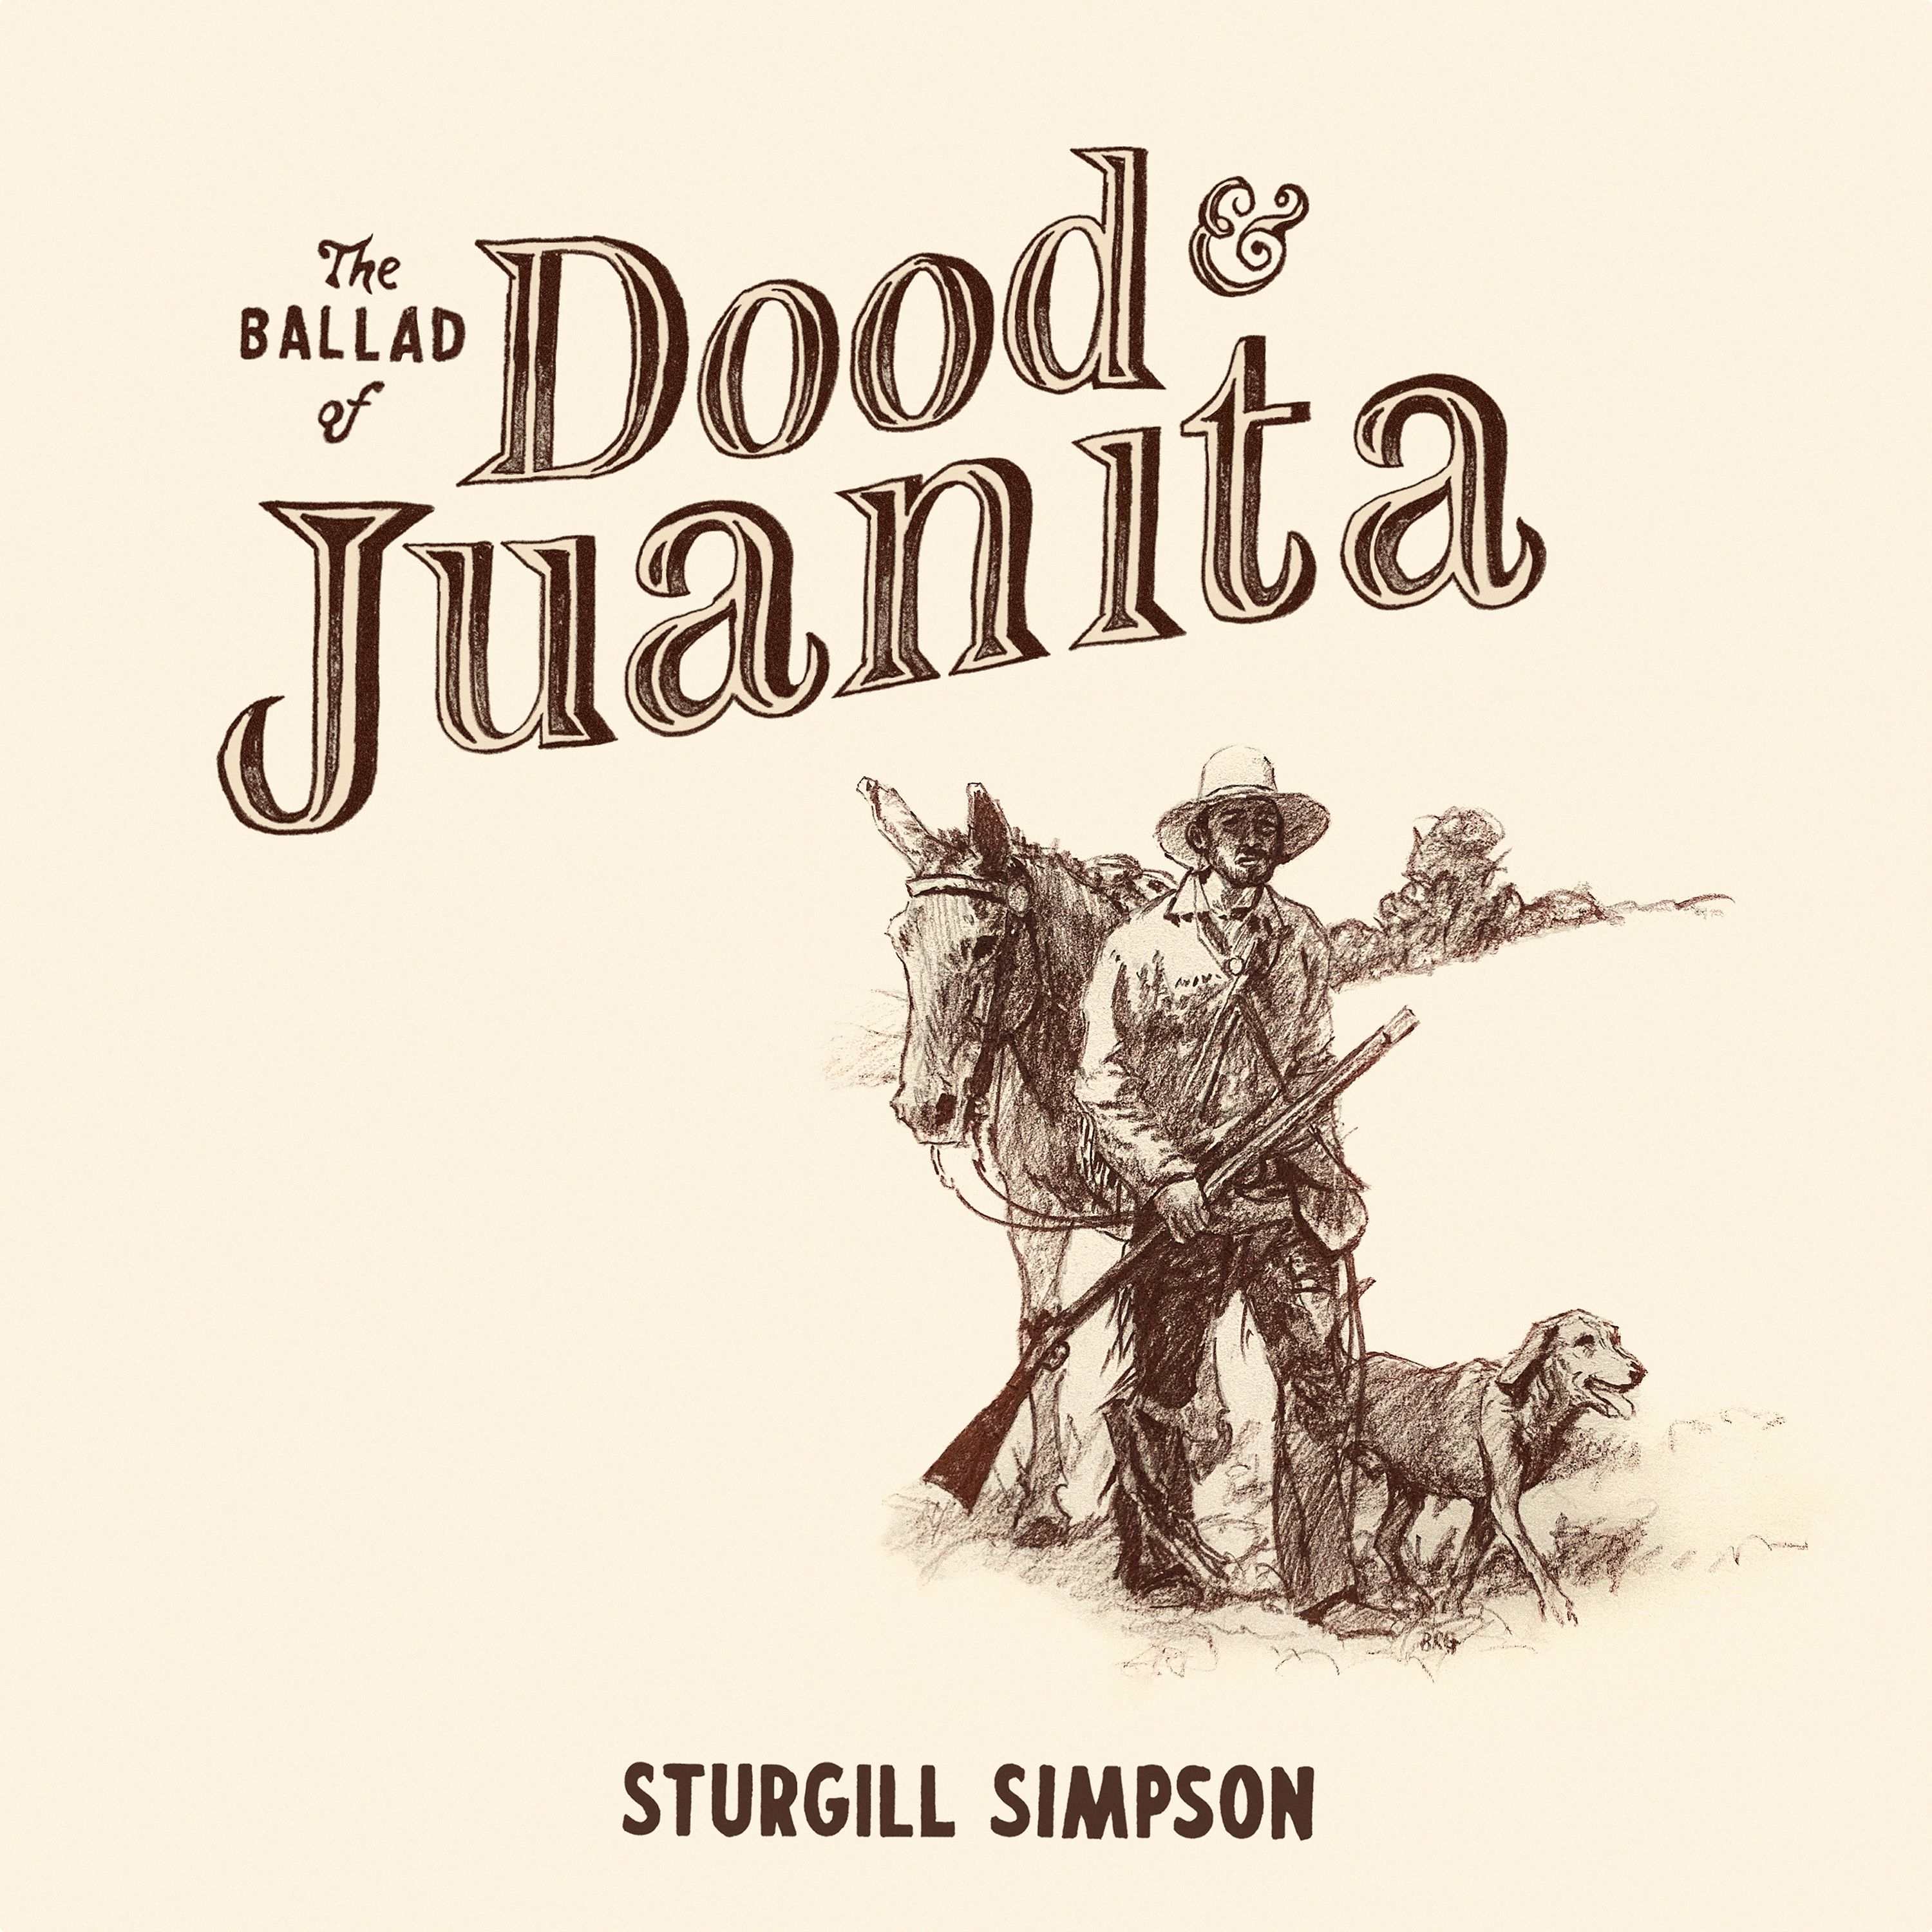 Sturgill Simpson - The Ballad of Dood & Juanita Album Cover